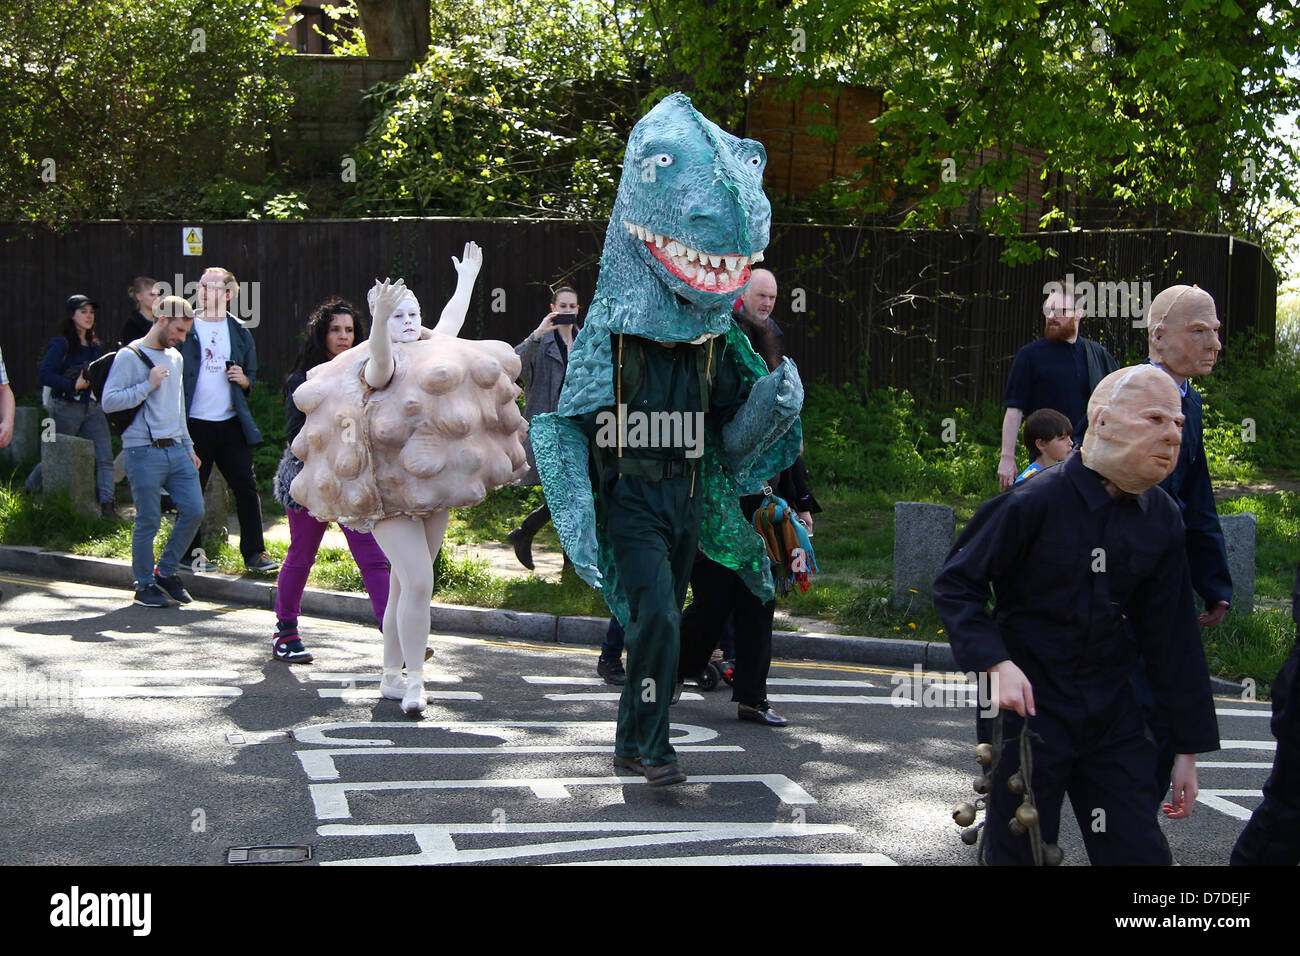 Londres, Reino Unido, 4 de mayo de 2013: Serrana Korda es espectacular monstruo gigante marioneta toma parte en una actuación especial "parodia la Bestia' Foto de stock